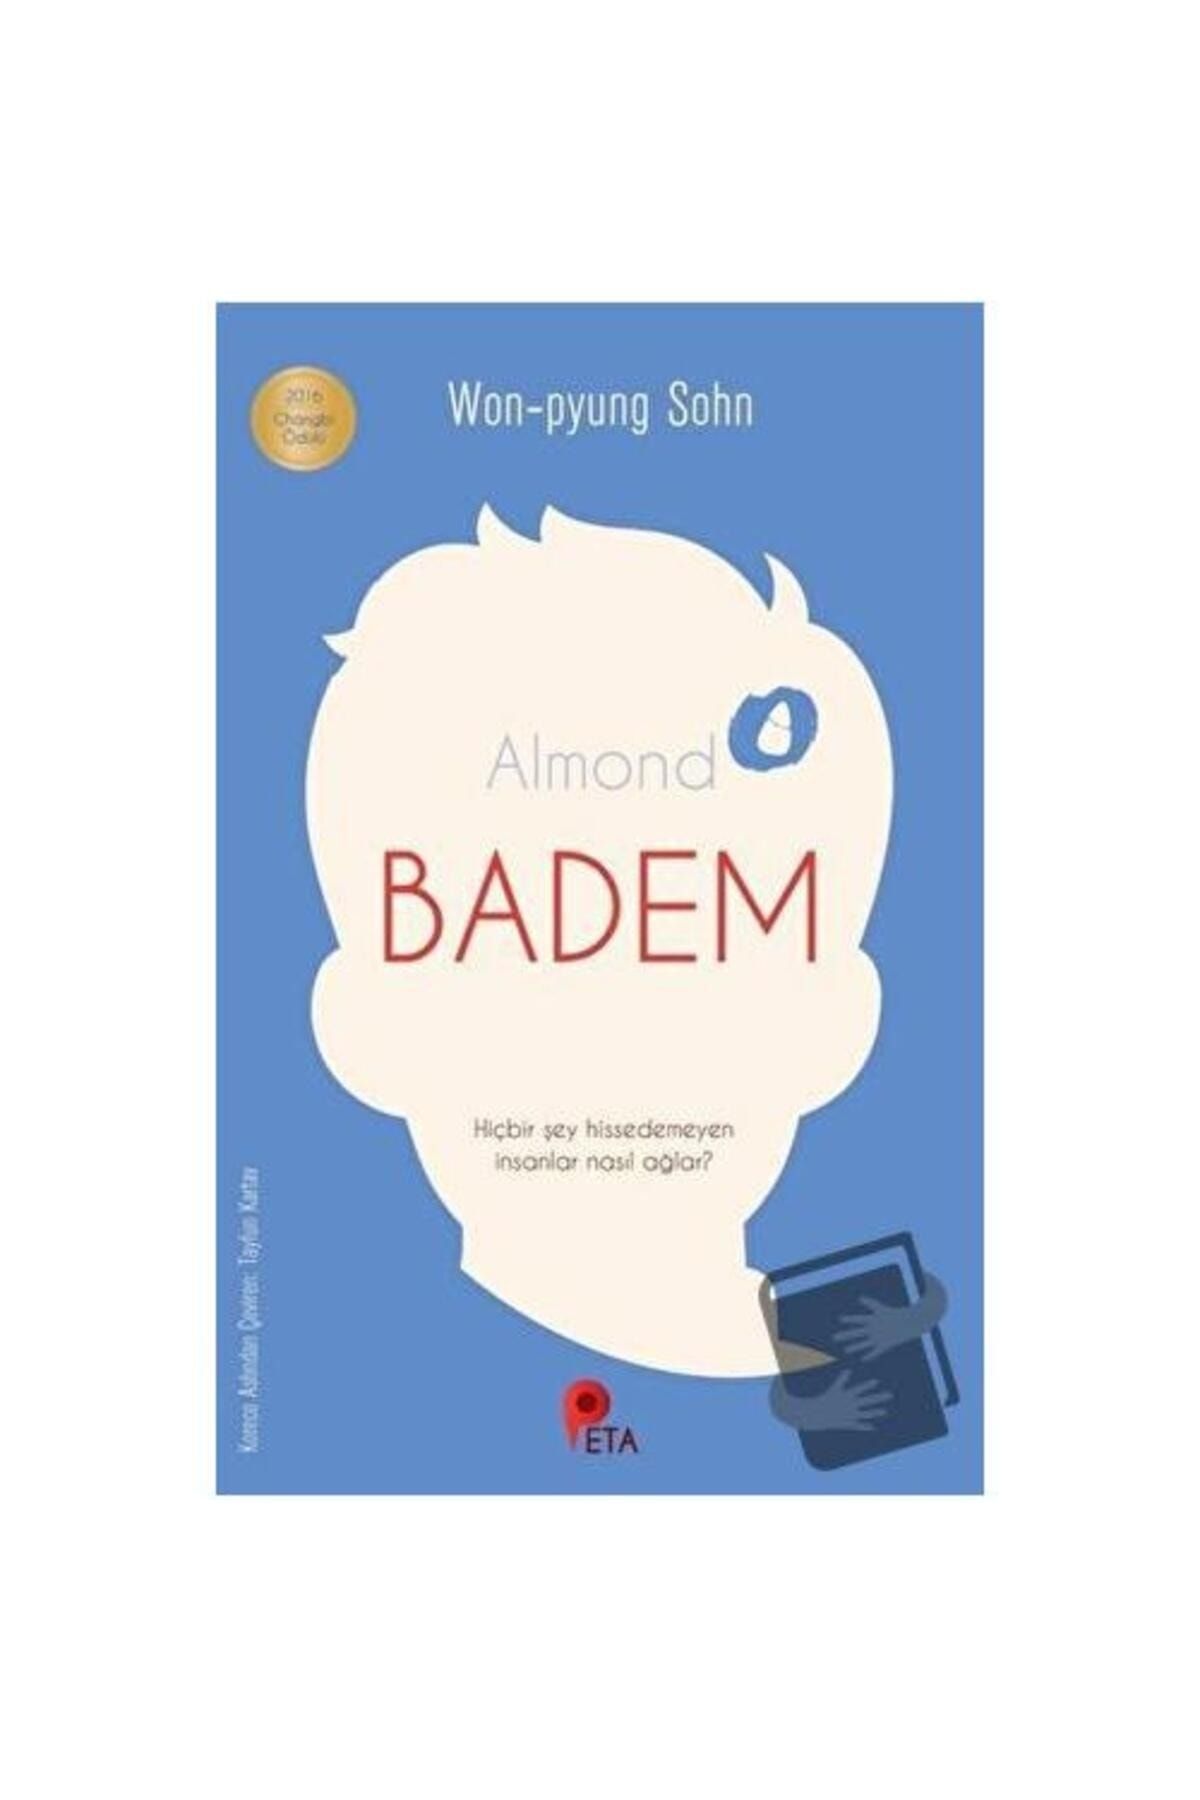 peta kitap Badem / / Won Pyung Sohn